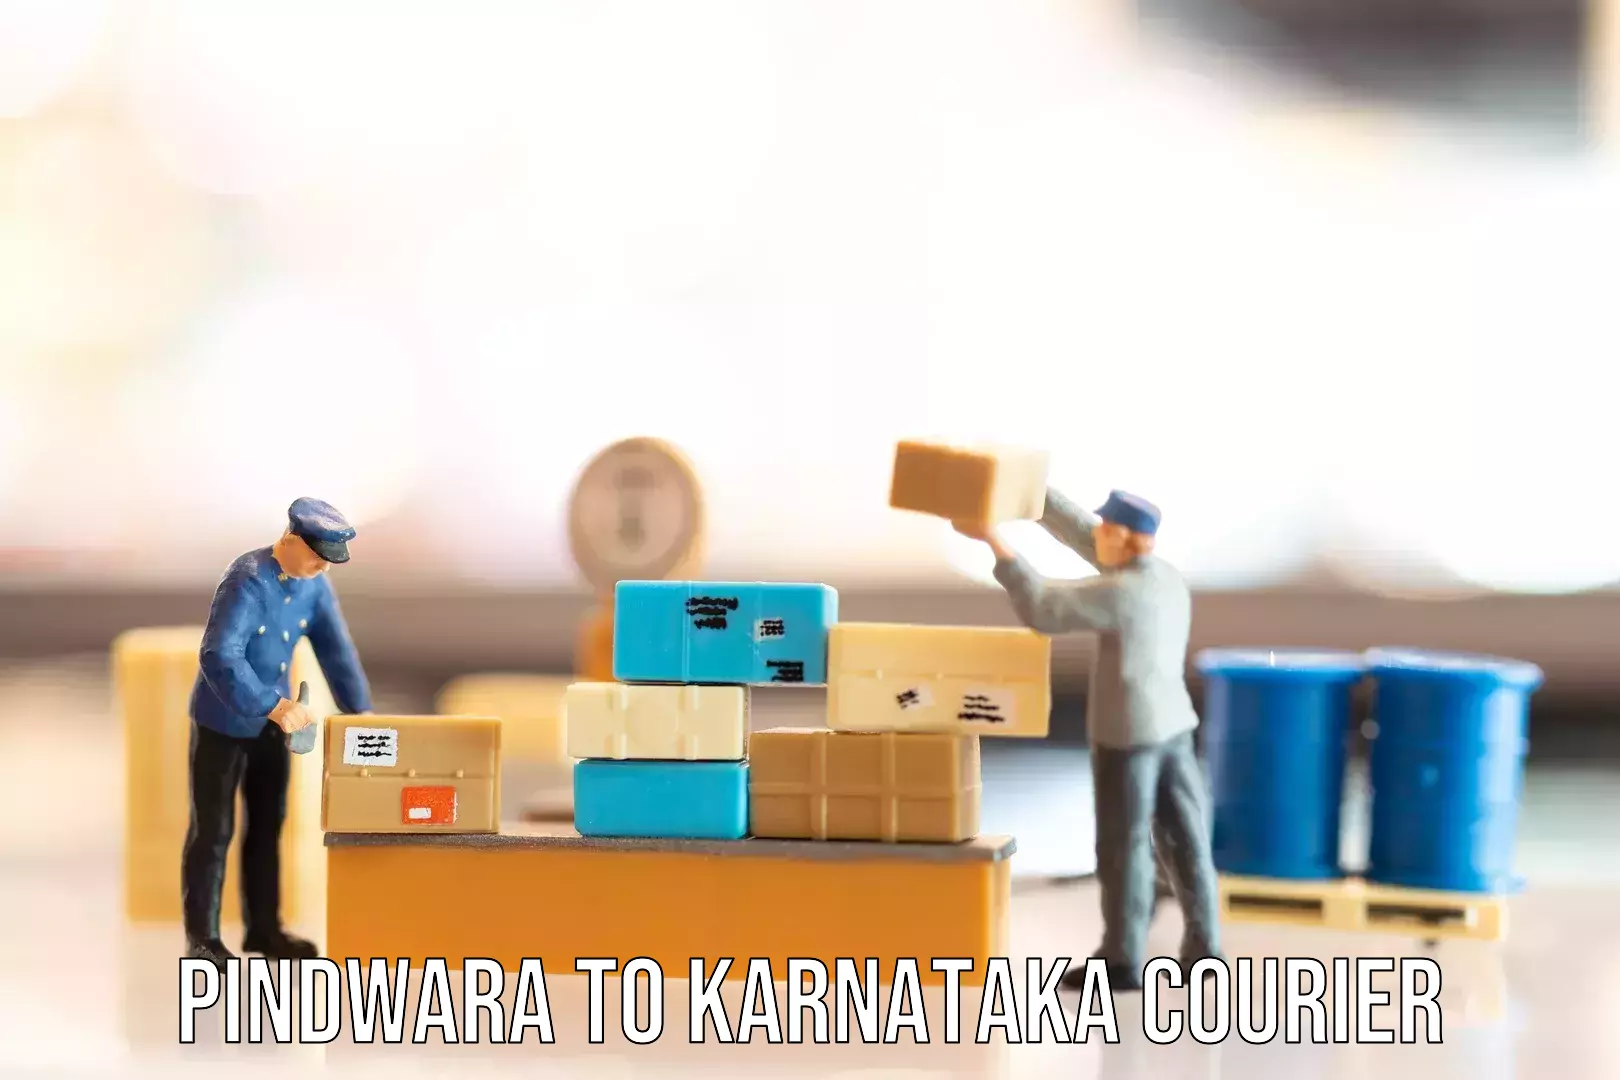 Baggage delivery technology Pindwara to Karnataka